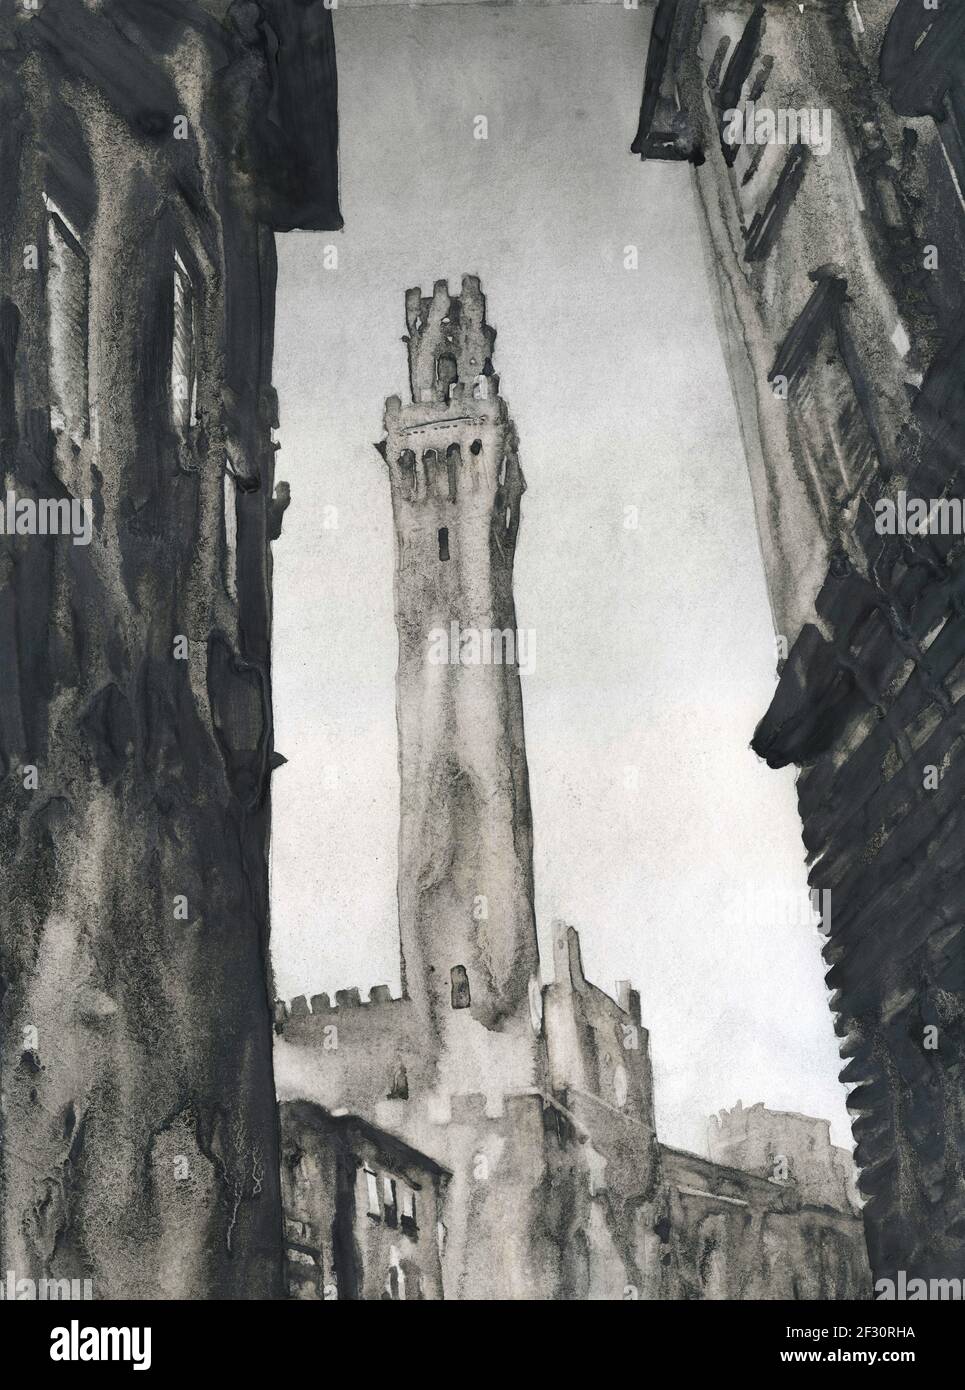 Tour de Sienne, Italie. Torre del Mangia dans la ville médiévale de Sienne, Italie œuvres d'art. Peinture à l'aquarelle de Sienne Banque D'Images